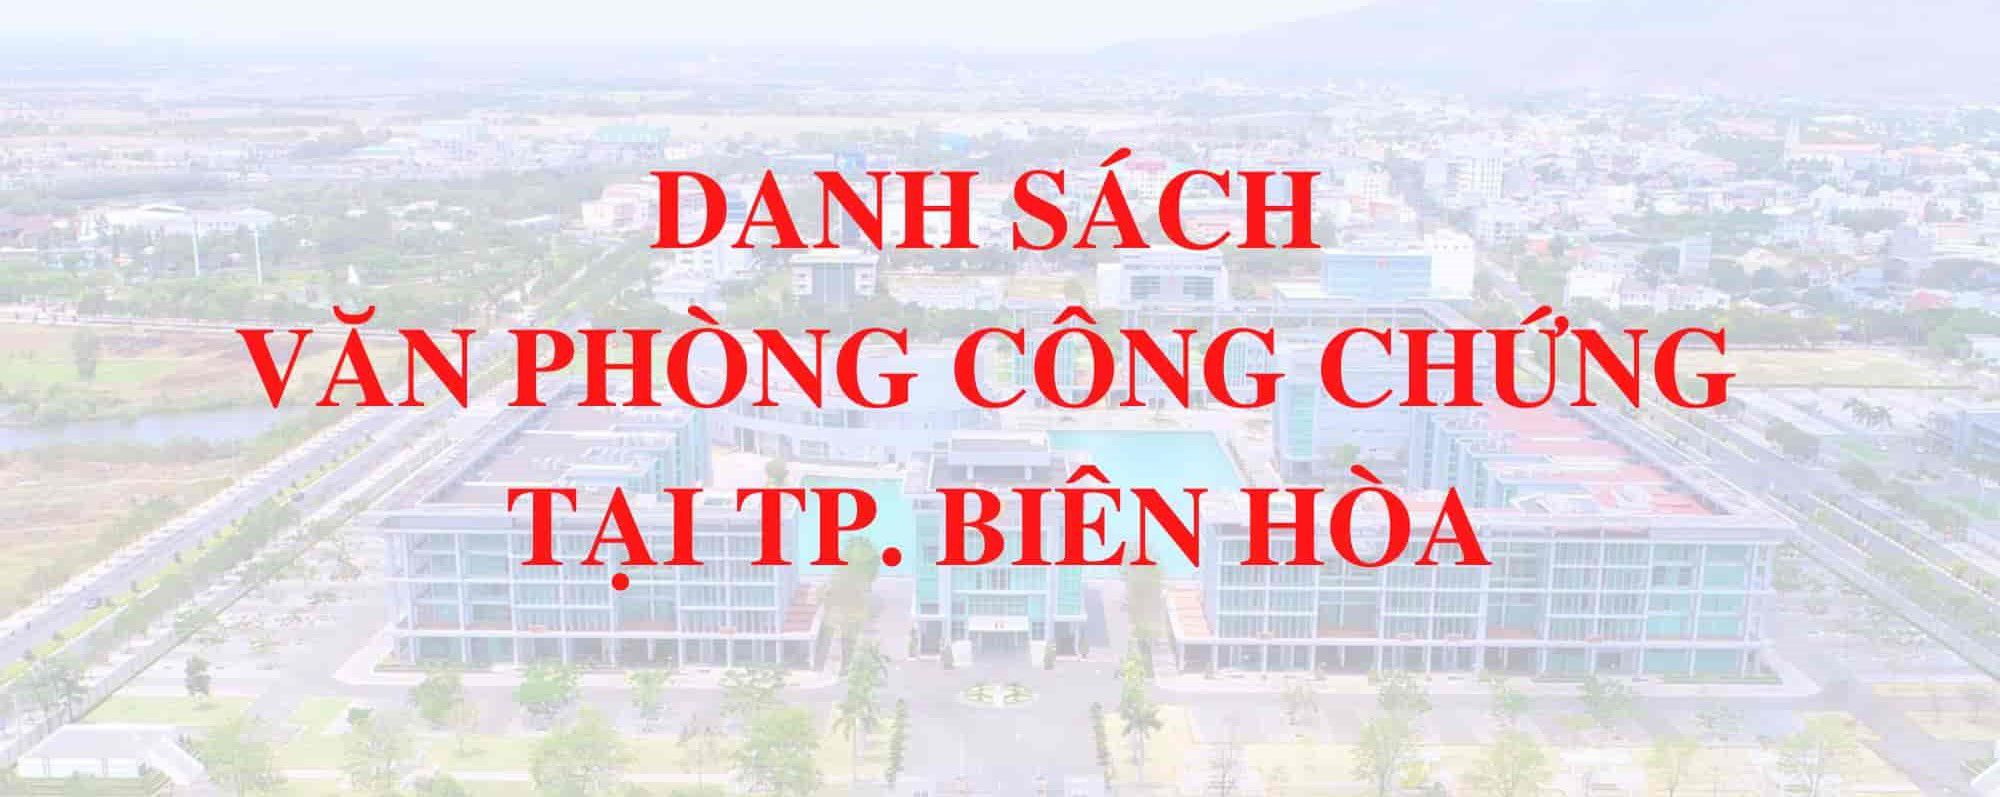 Phong Cong Chung Thanh Pho Bien Hoa Dong Nai 1